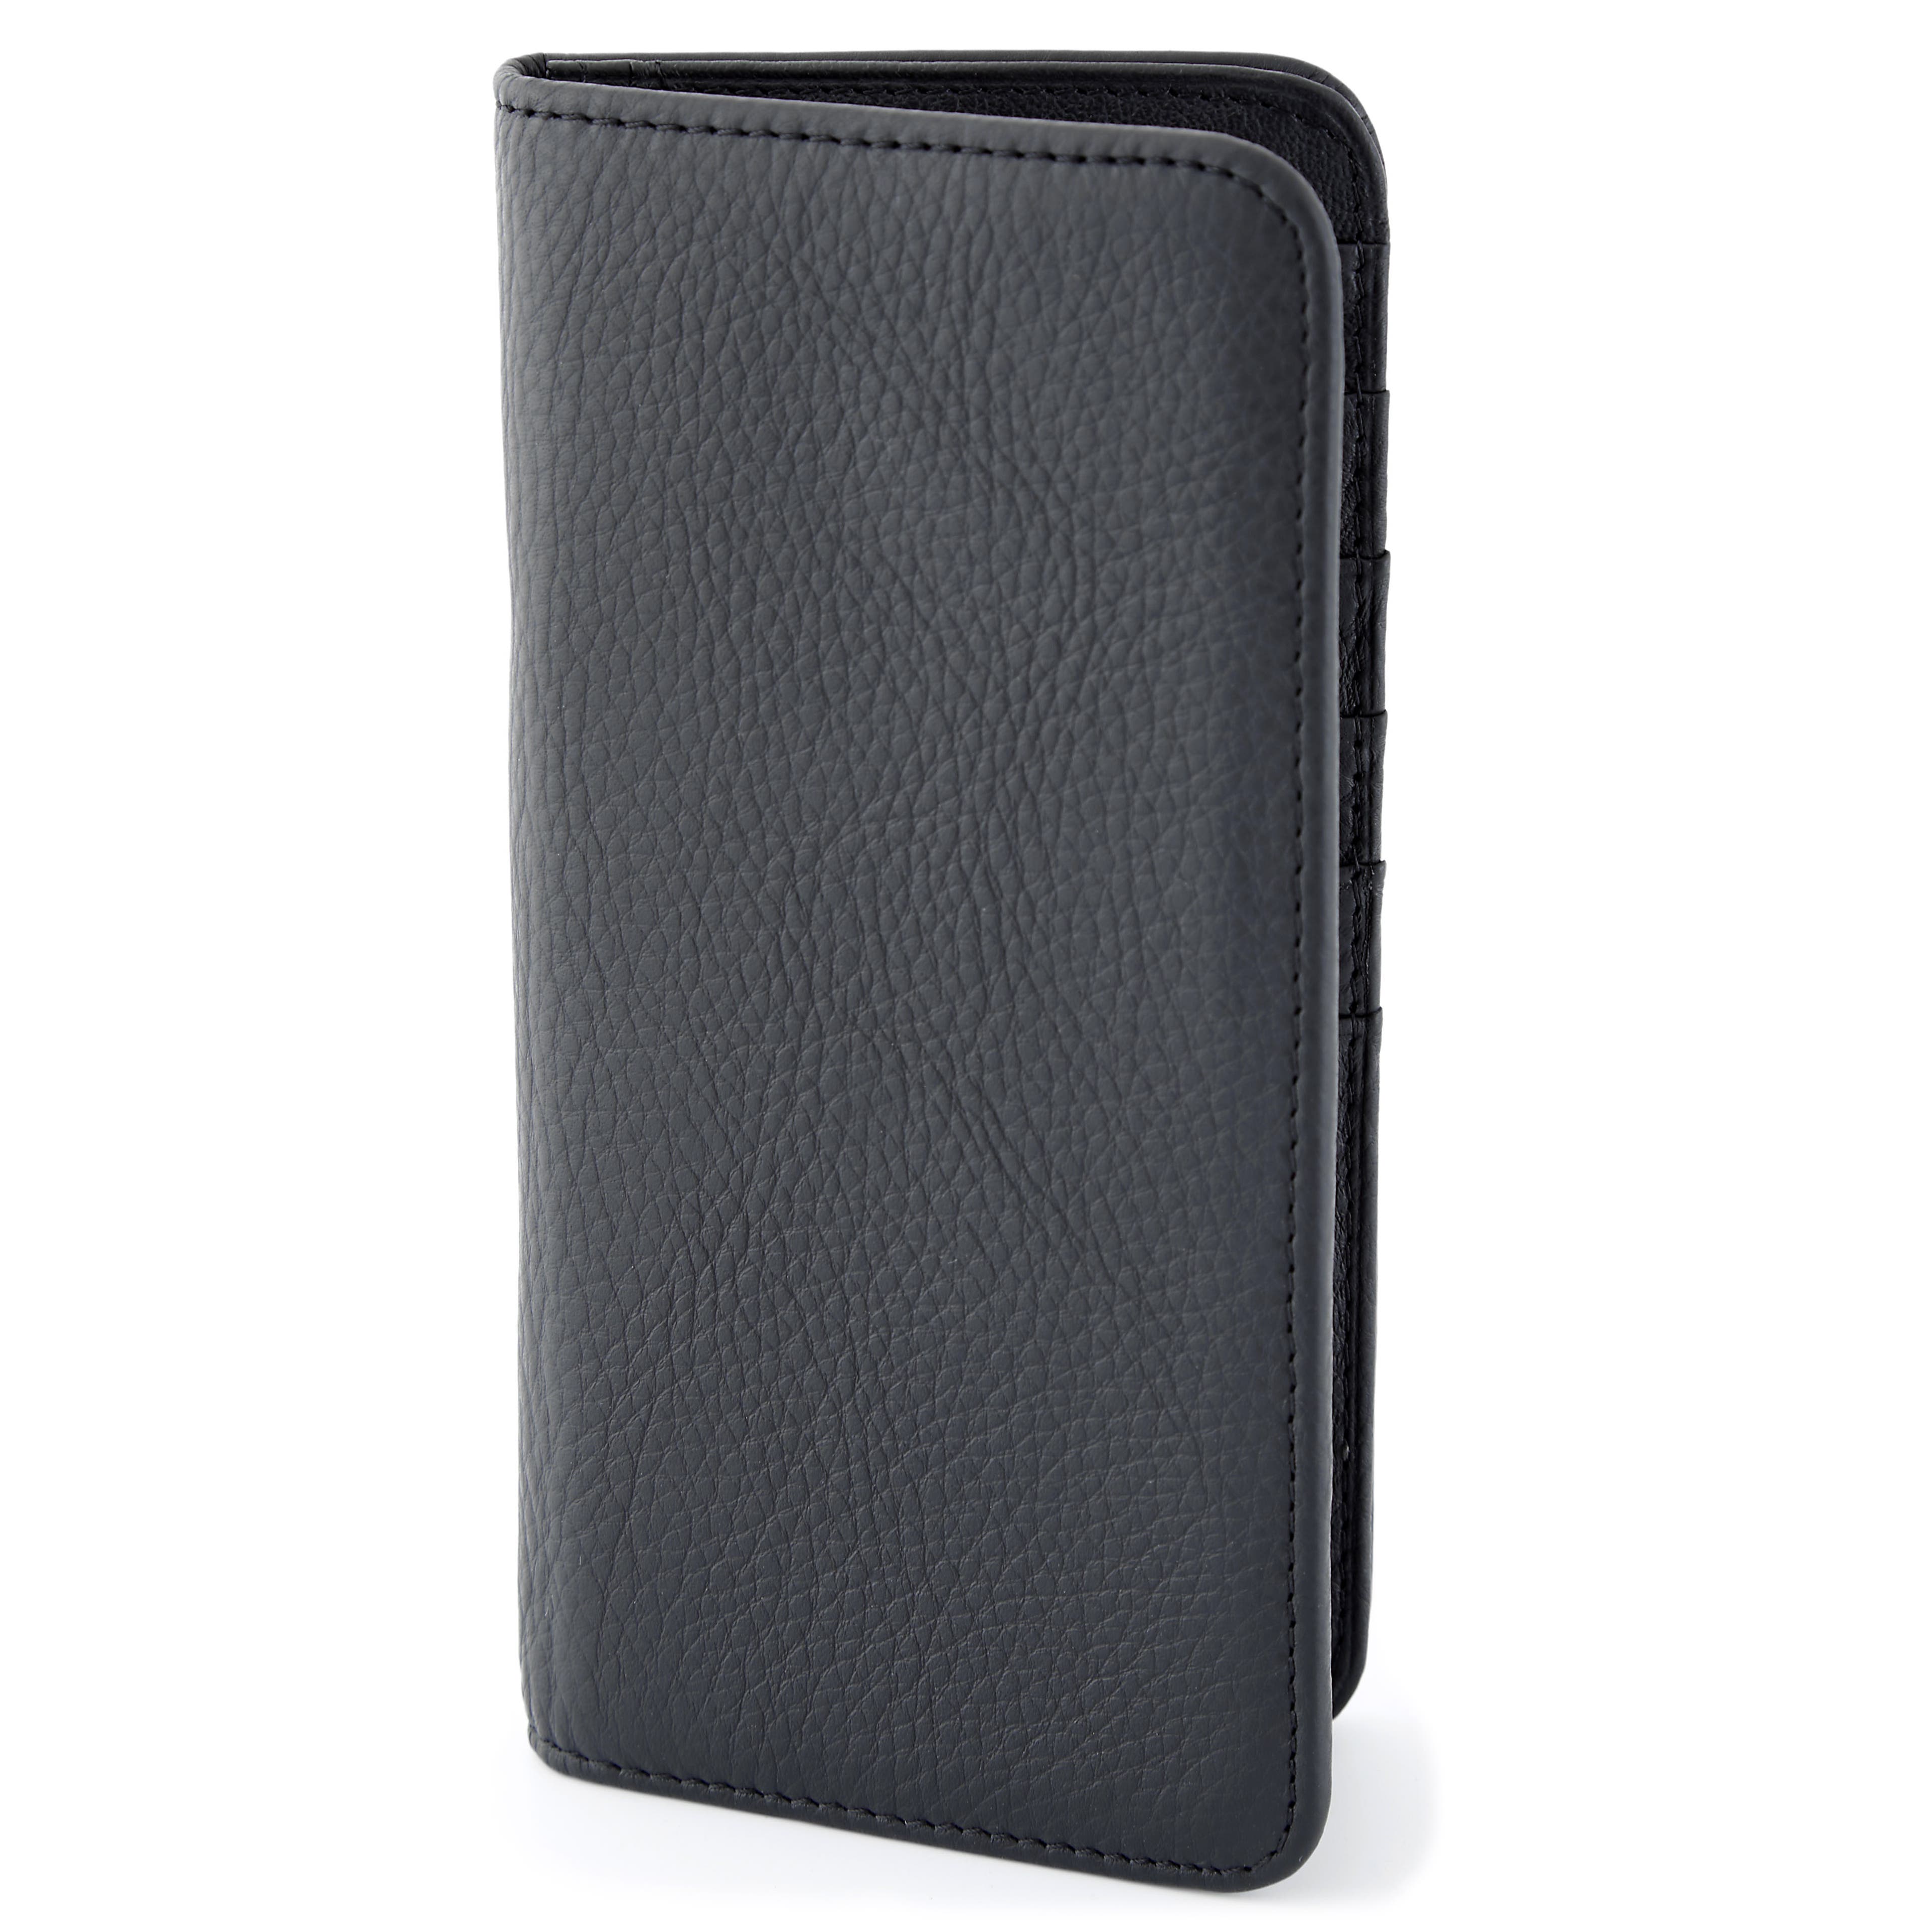 Elegant Large Black Leather Wallet